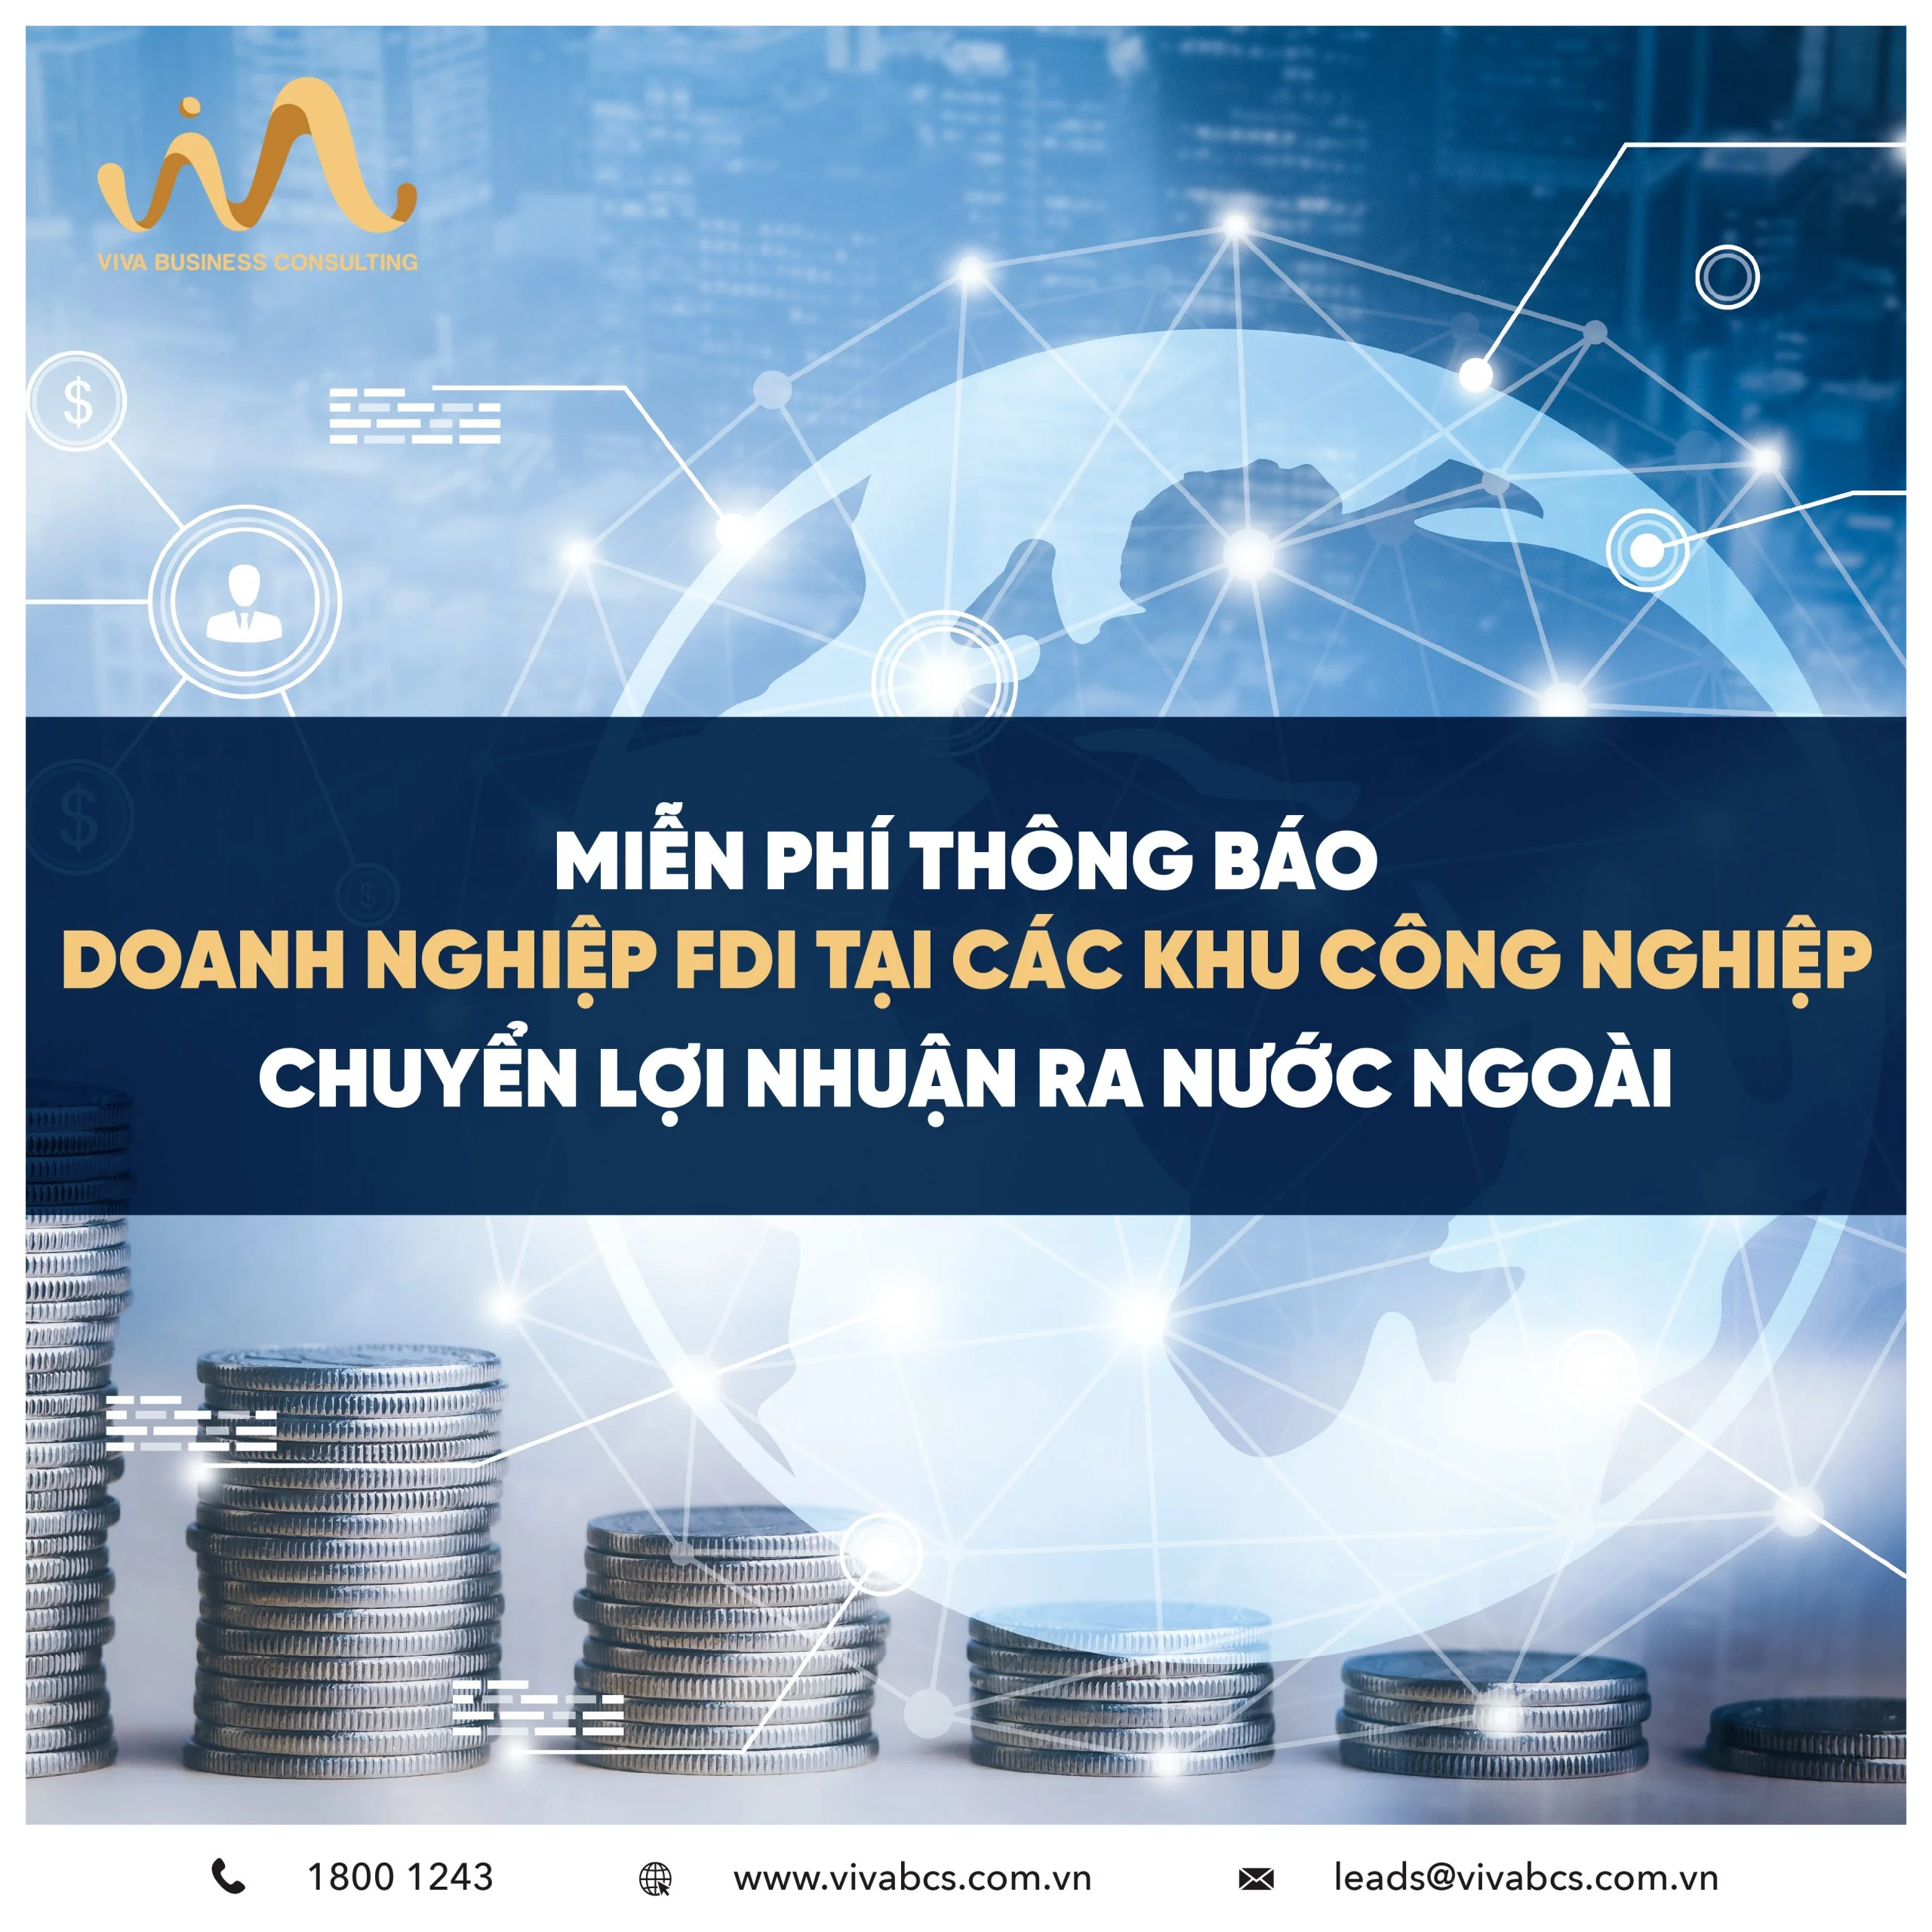 Chuyển lợi nhuận ra nước ngoài | Doanh nghiệp FDI tại Việt Nam